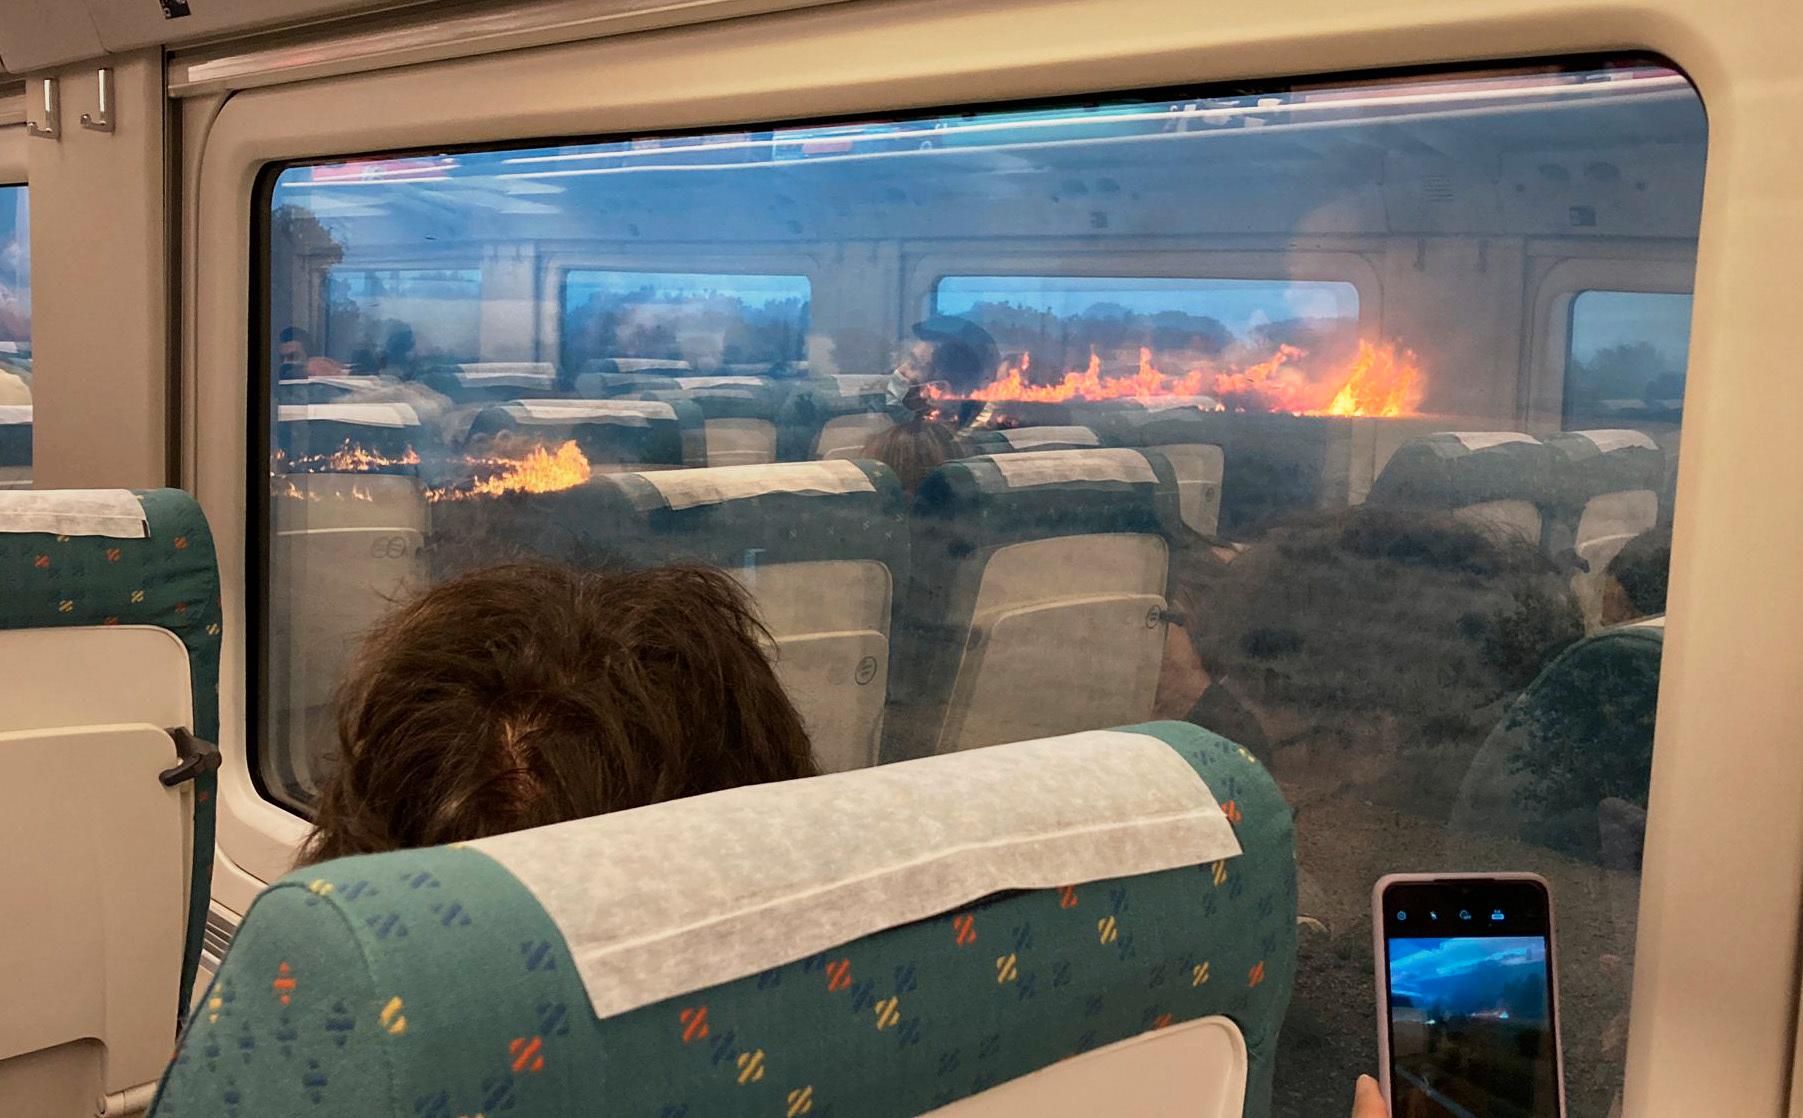 Passagerare i spanska Zamora filmar och fotograferar branden som omger det stillastående tåget.